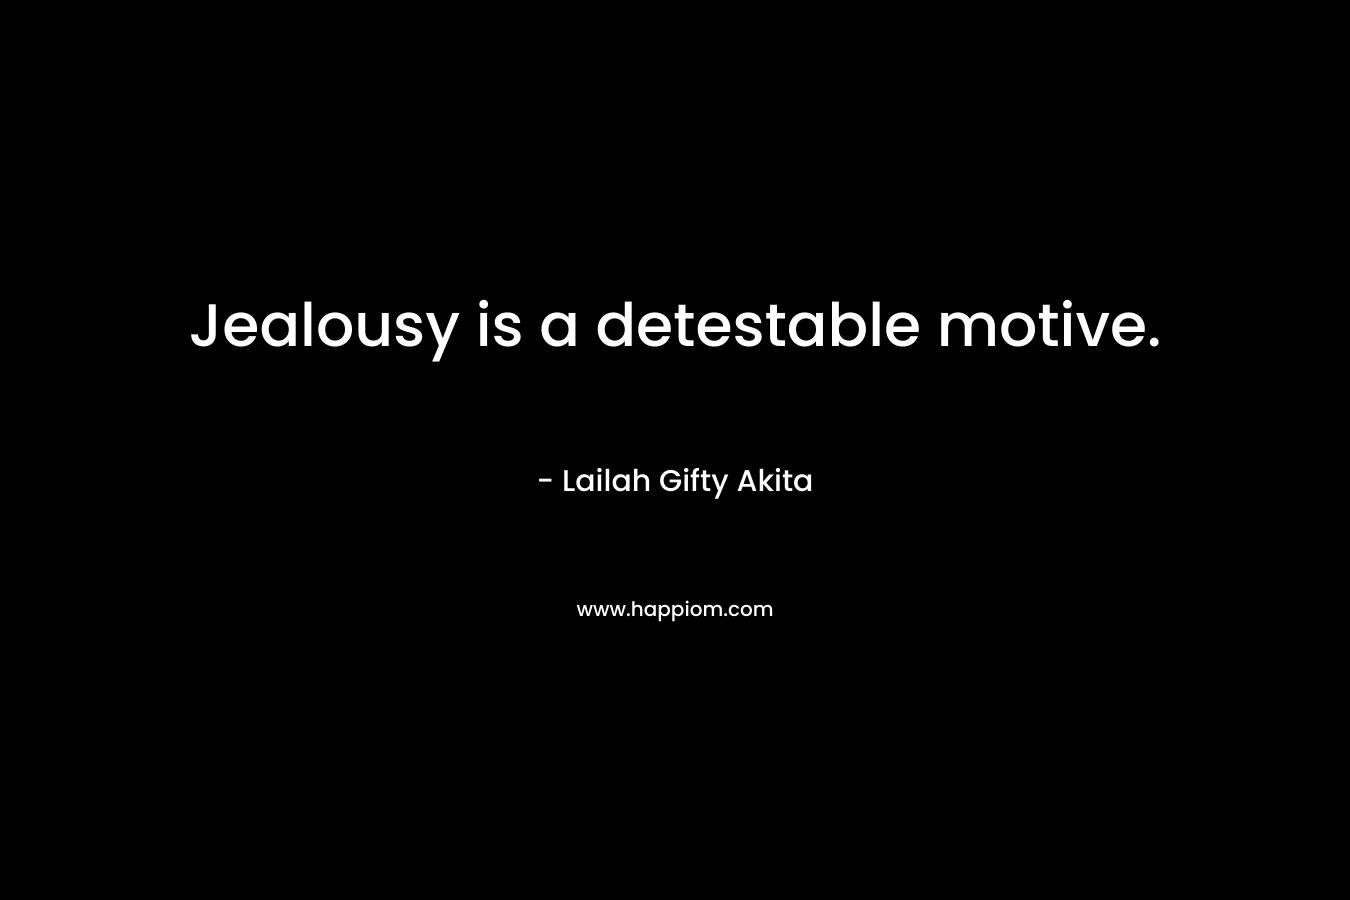 Jealousy is a detestable motive.